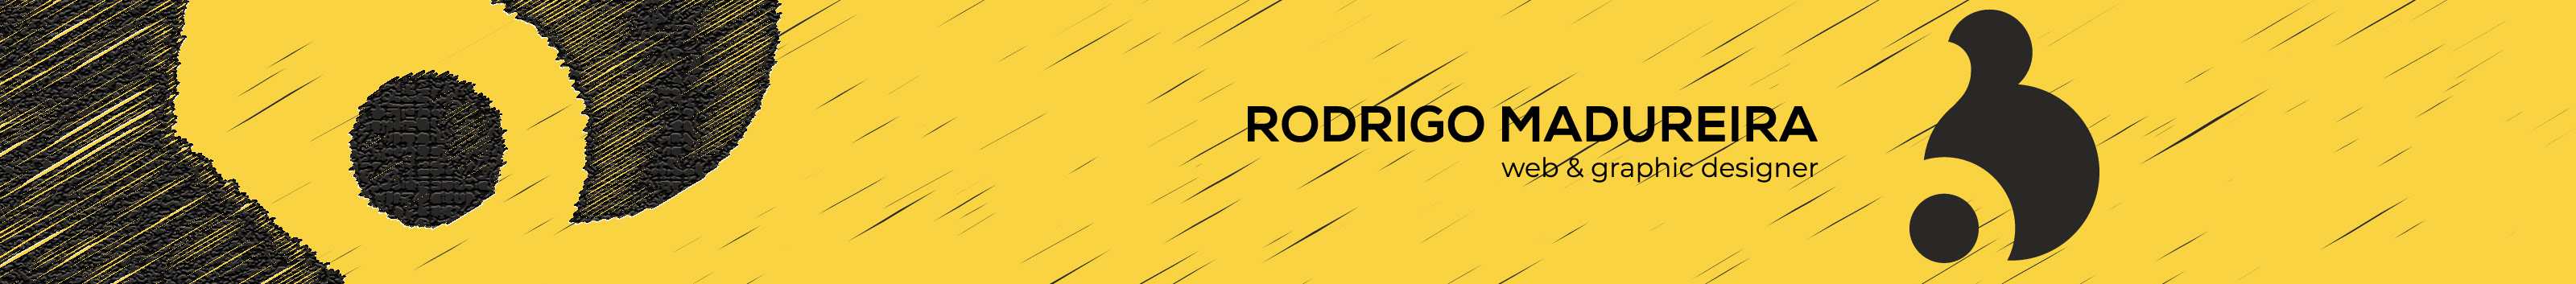 Баннер профиля Rodrigo Madureira